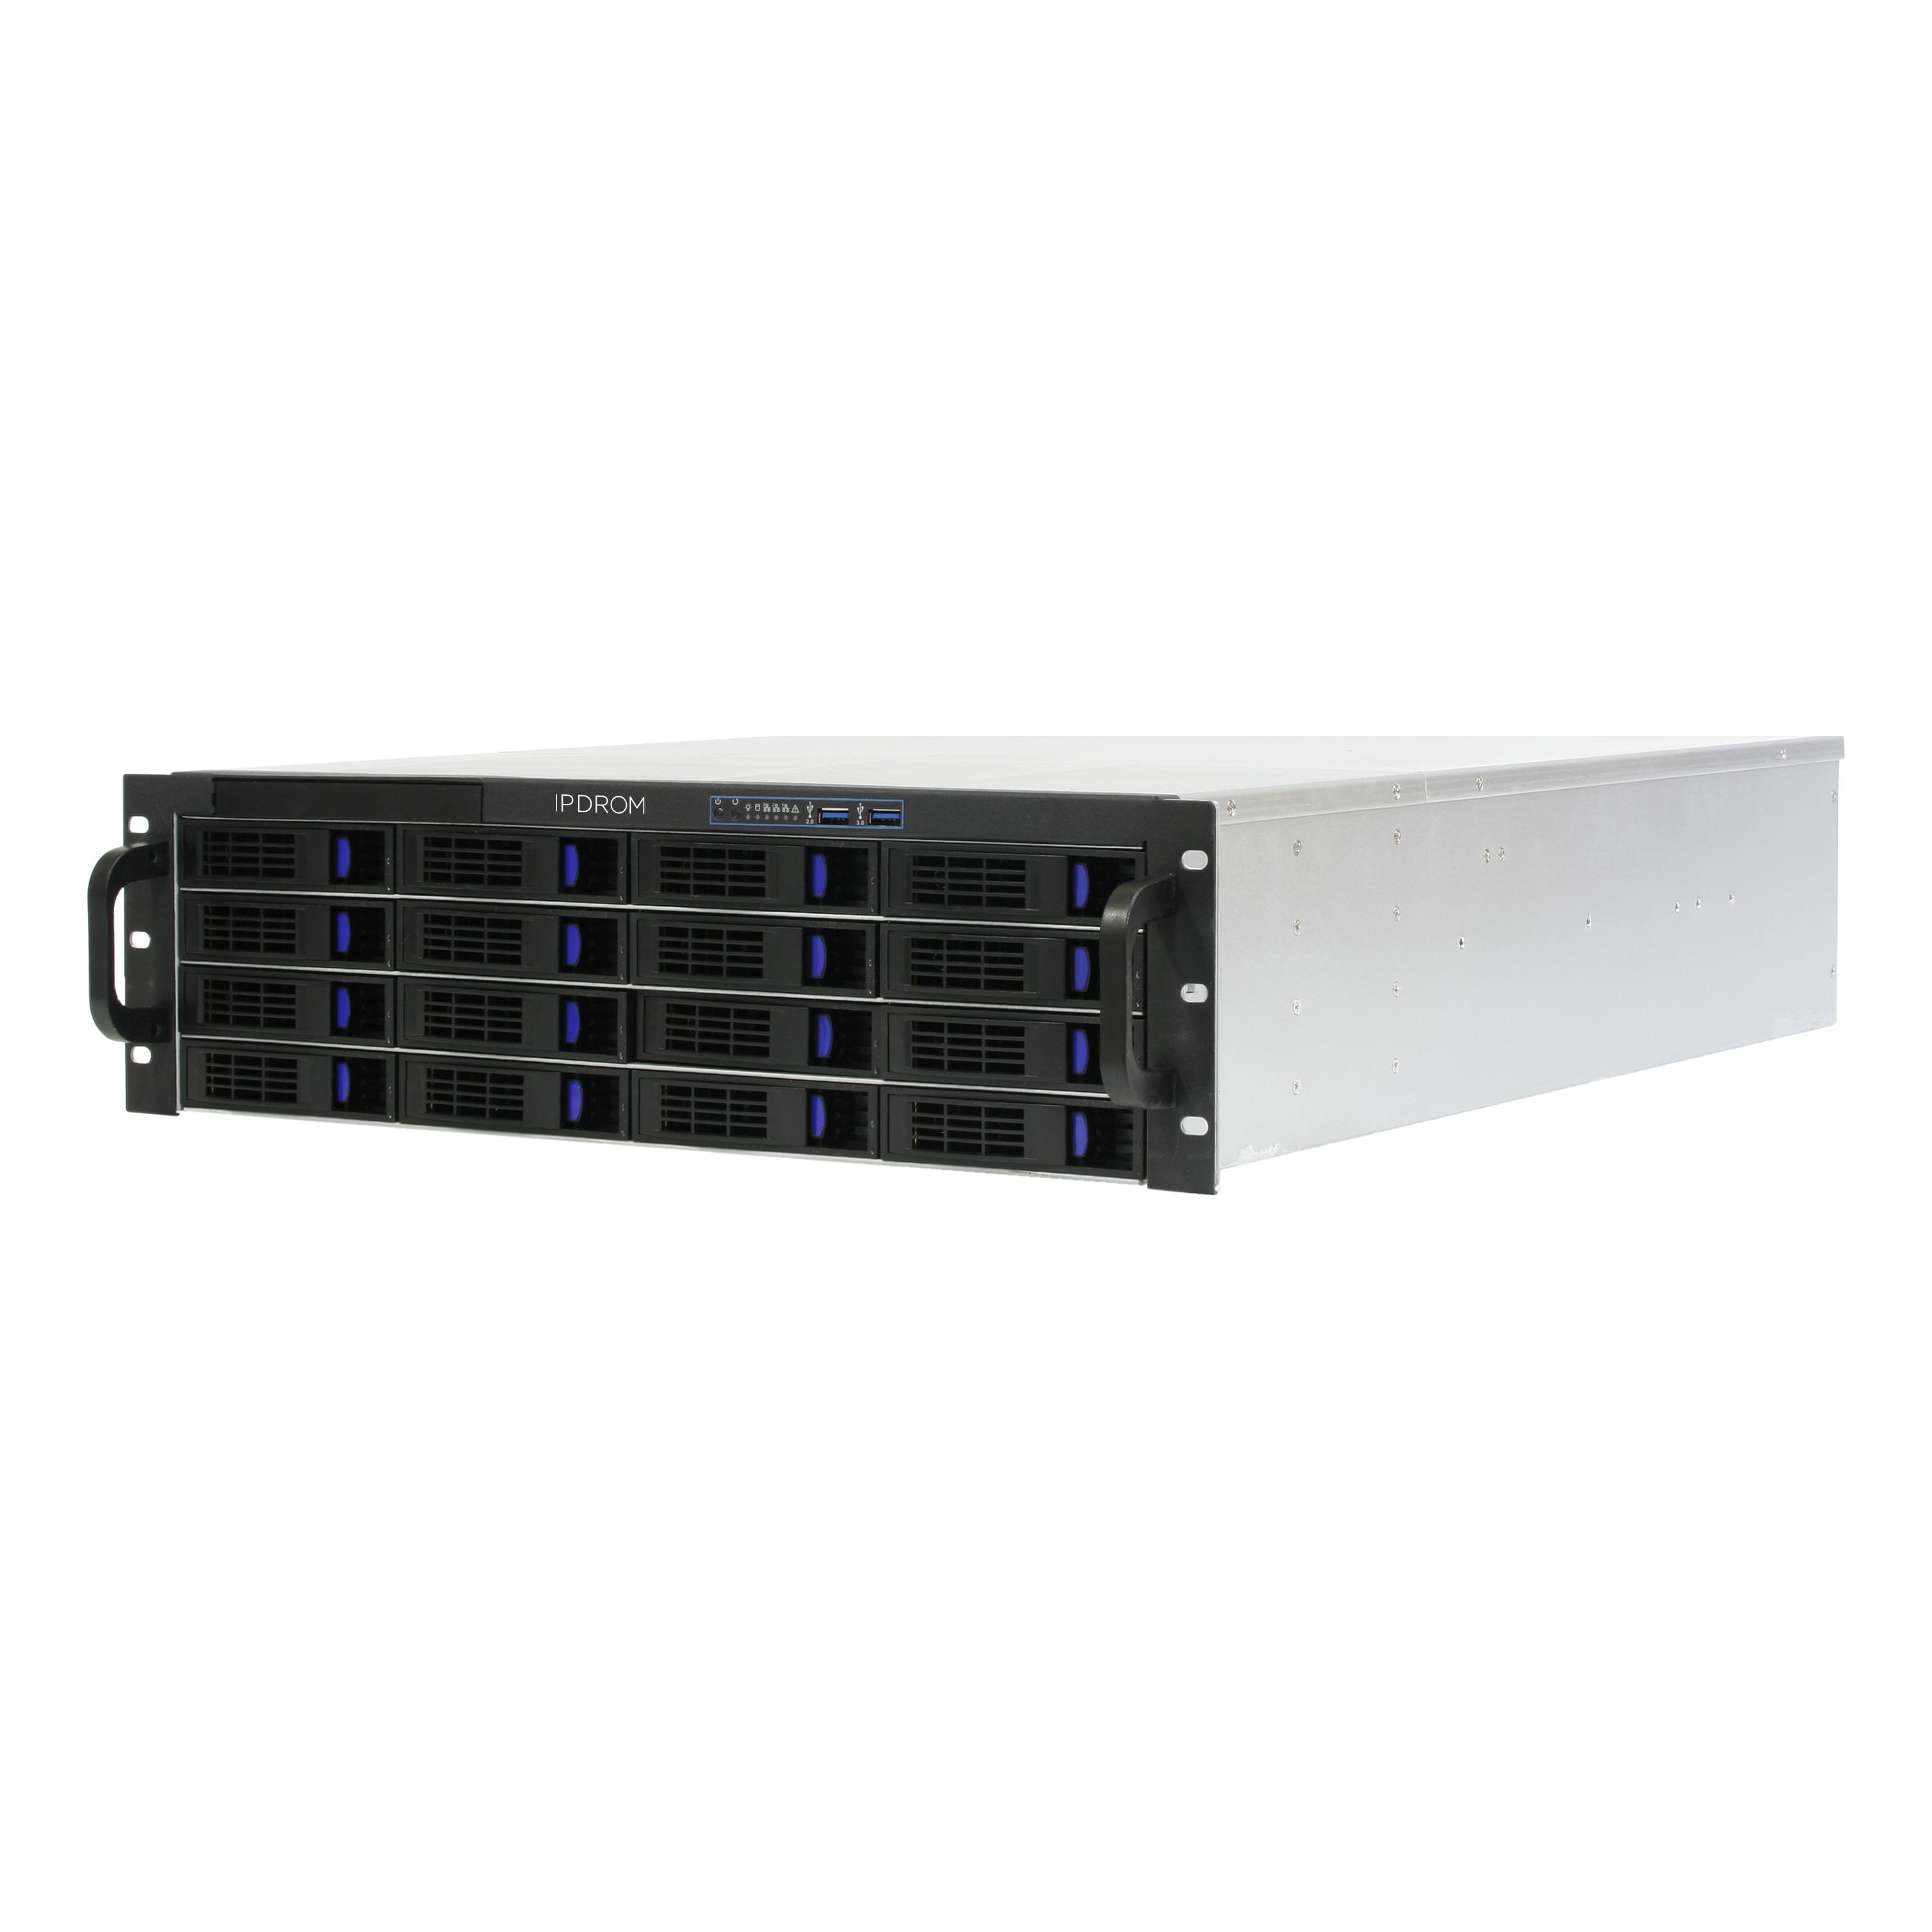 Сервер IPDROM Enterprise (E-192-Р-С3-144/Р6)